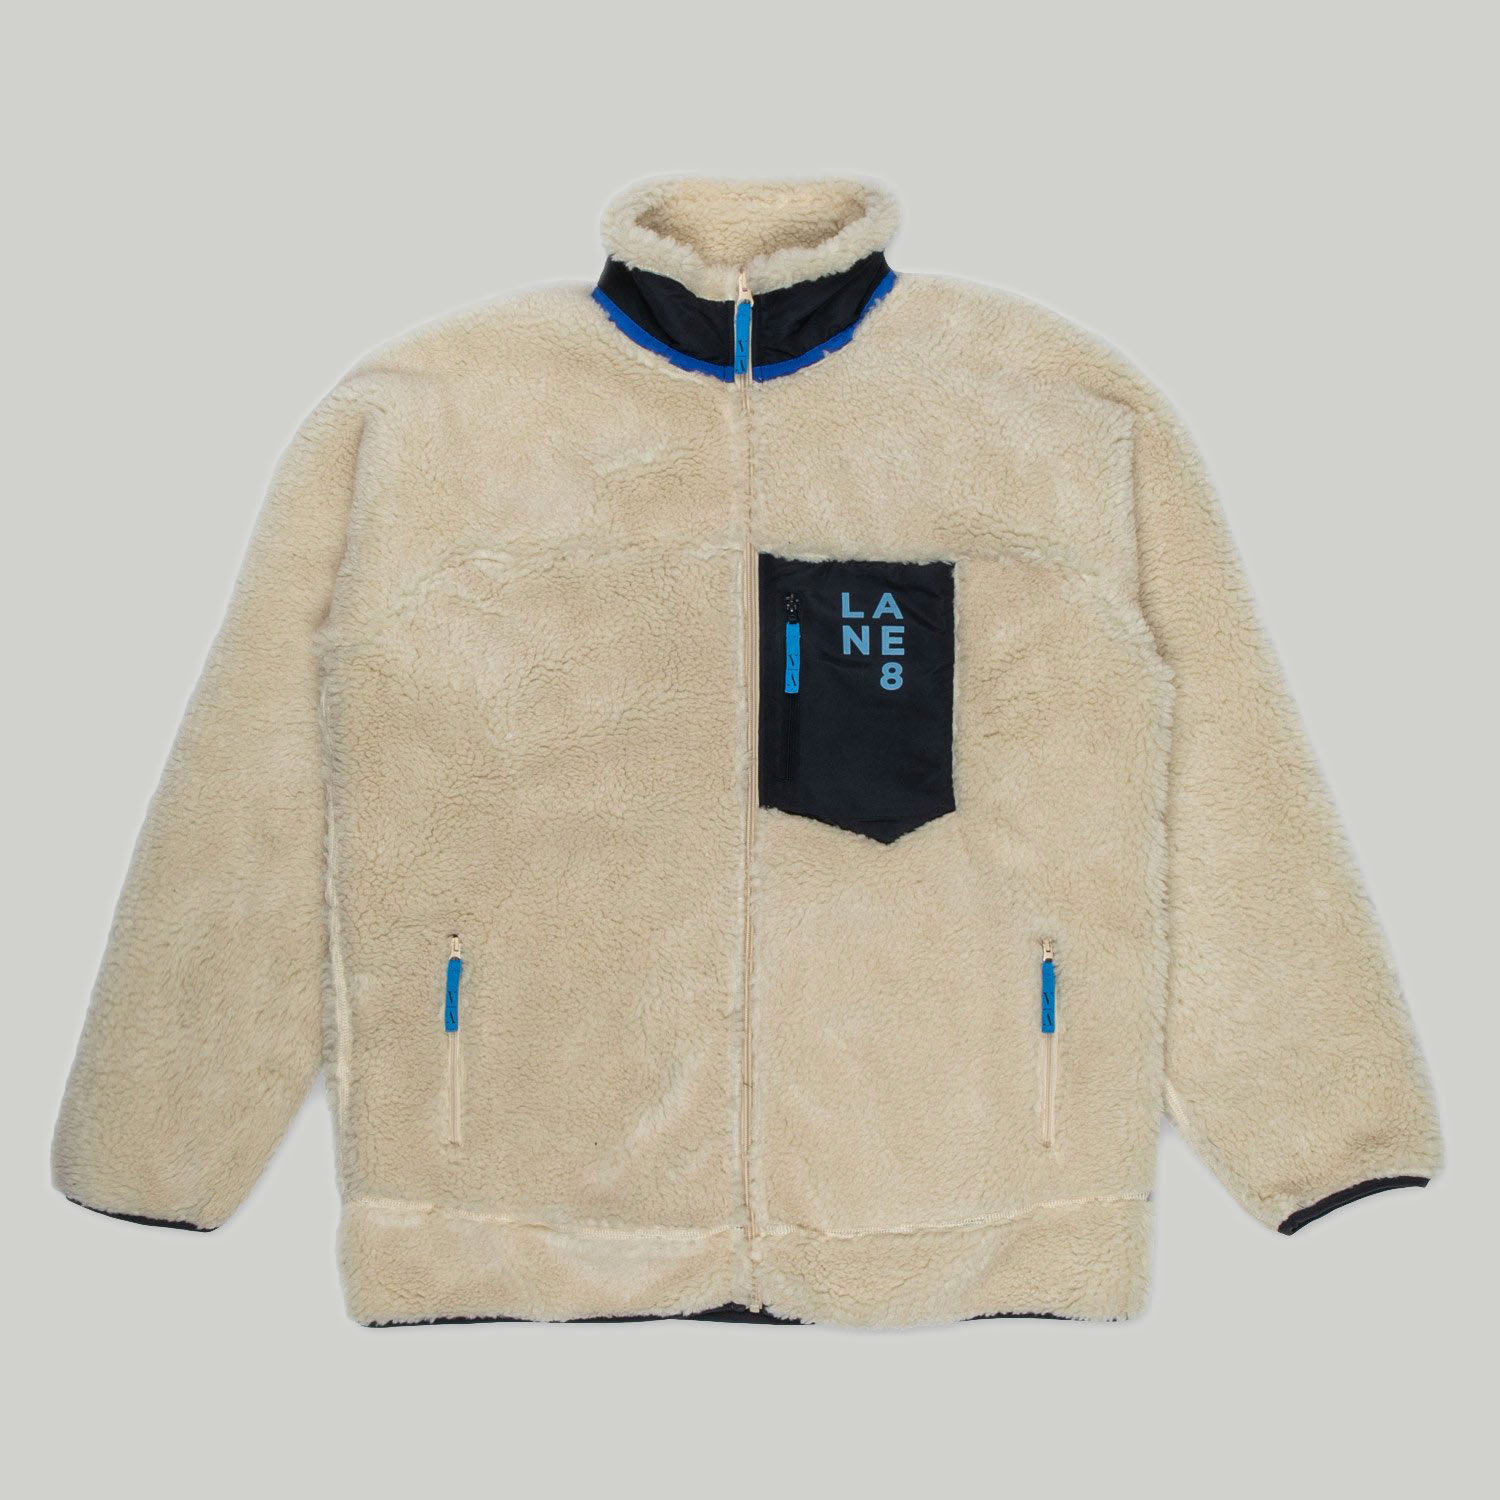 Lane 8 Fleece jacket